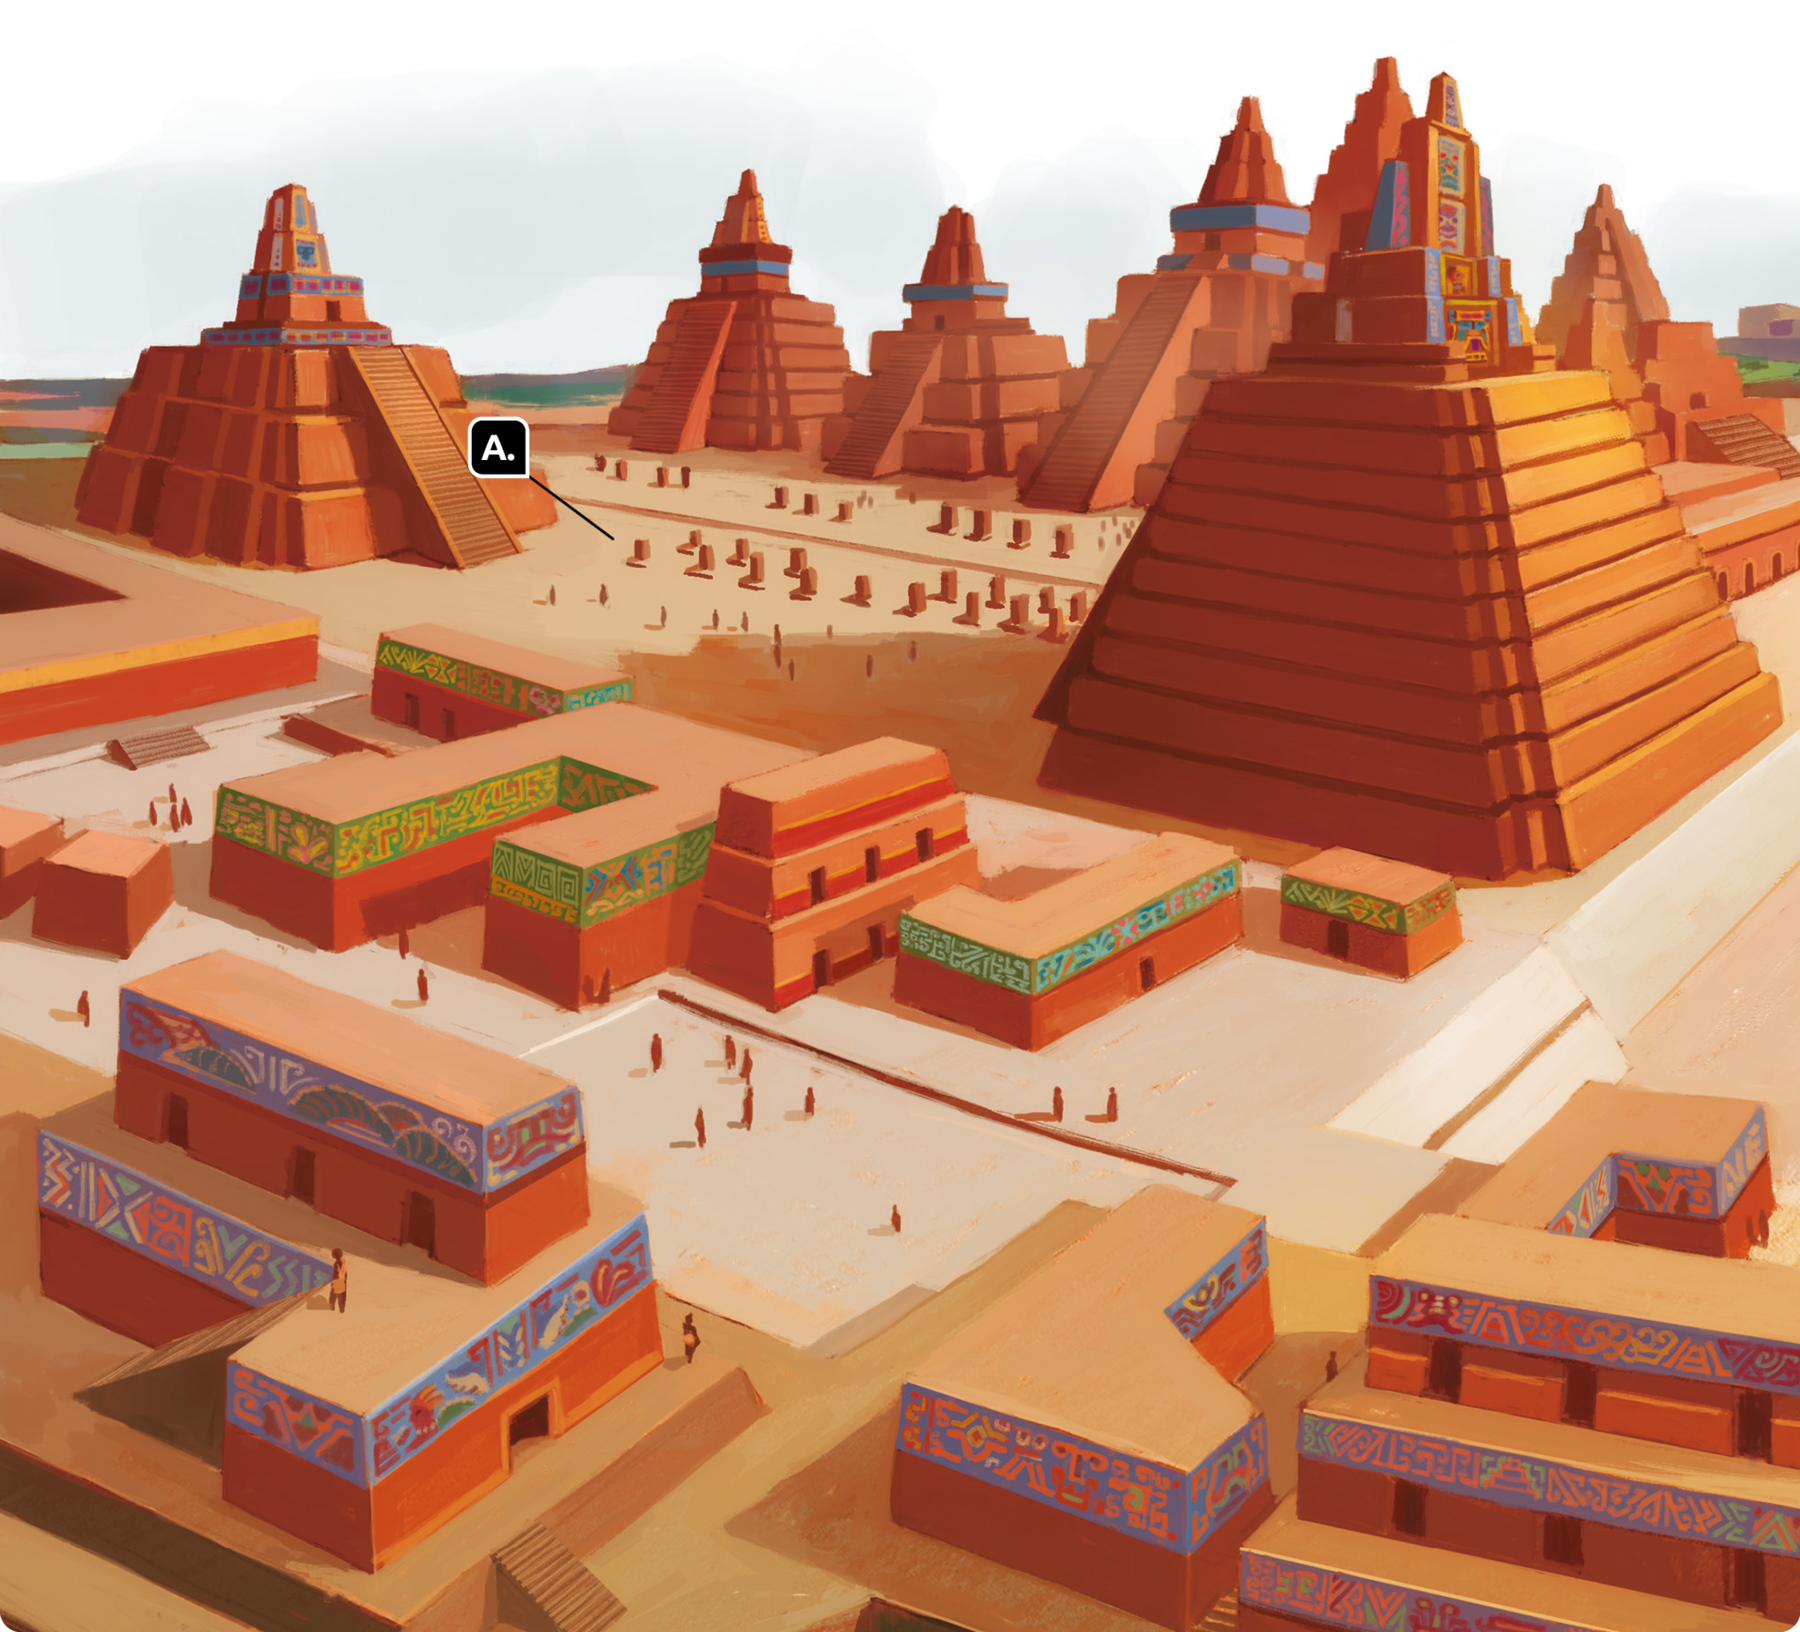 Ilustração. Vista de uma cidade antiga. À esquerda, uma pirâmide com uma escada central. Em frente à essa pirâmide, um pátio grande. Sobreposto à letra 'A'. Ao lado, construções pequenas. À direita, outra pirâmide em frente ao pátio. Ao fundo, várias pirâmides. As pirâmides e as construções são marrons com detalhes coloridos em verde, azul, vermelho e amarelo.